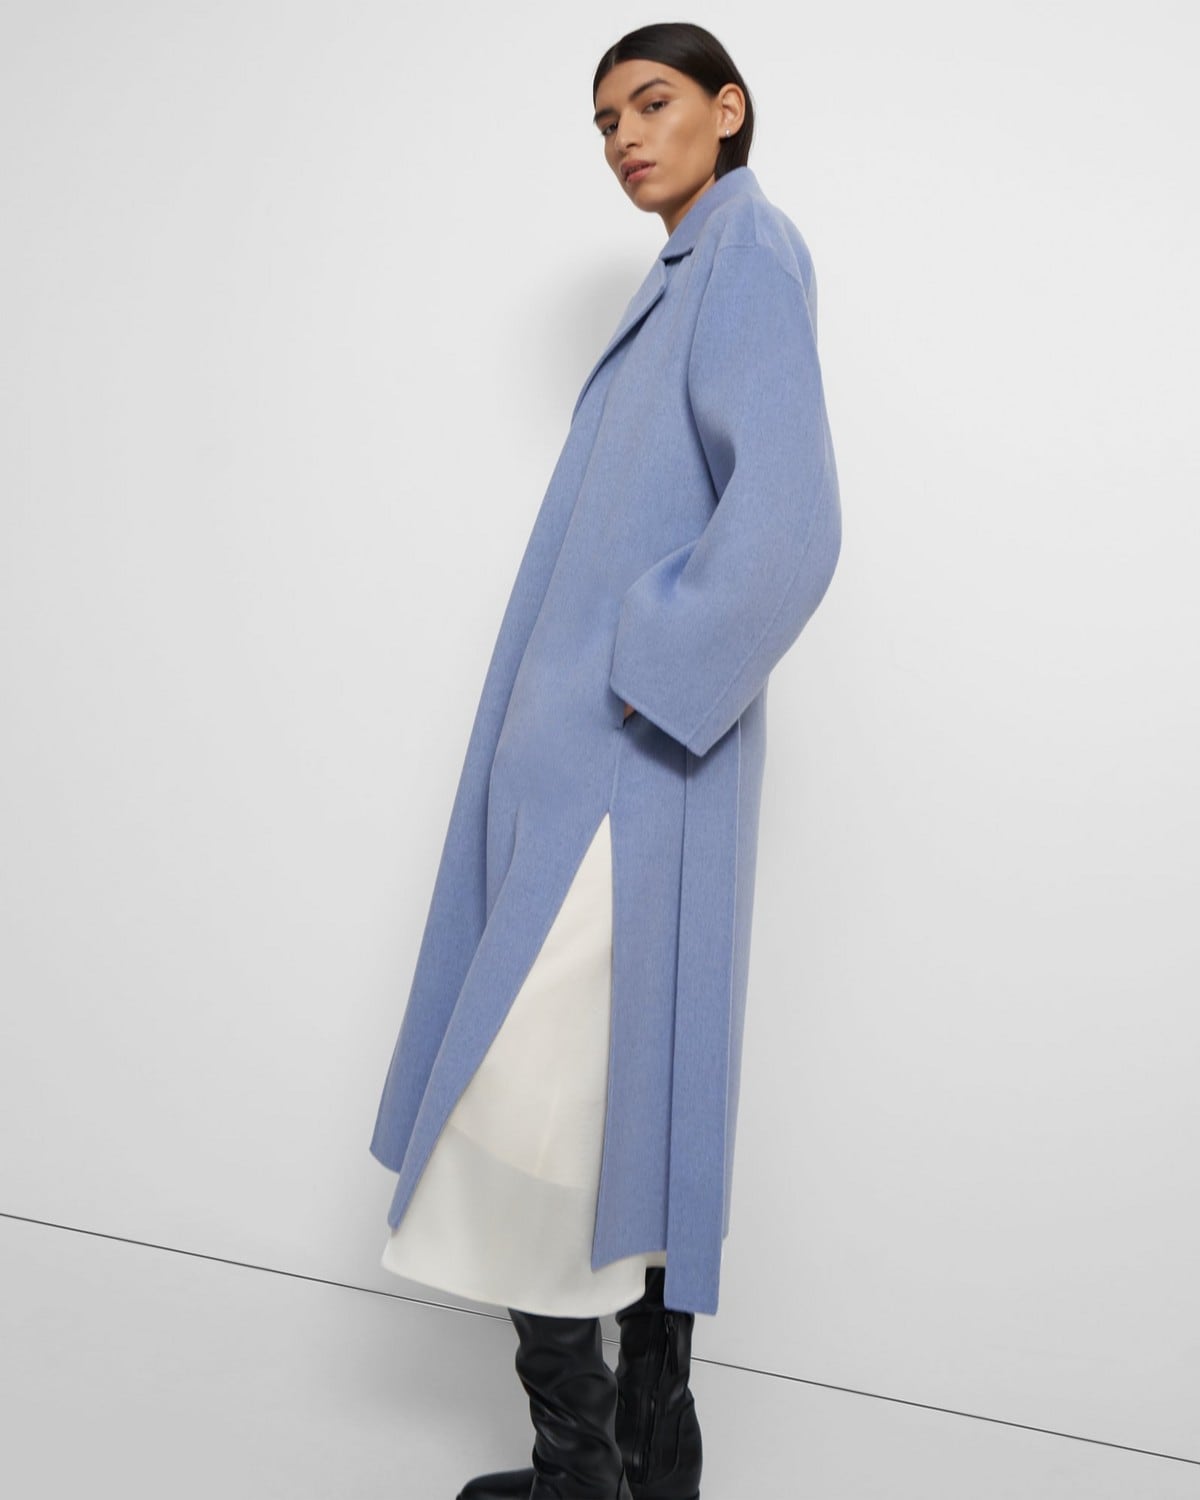 띠어리 랩 코트 Theory Wrap Coat in Double-Face Wool-Cashmere,CORNFLOWER MELANGE